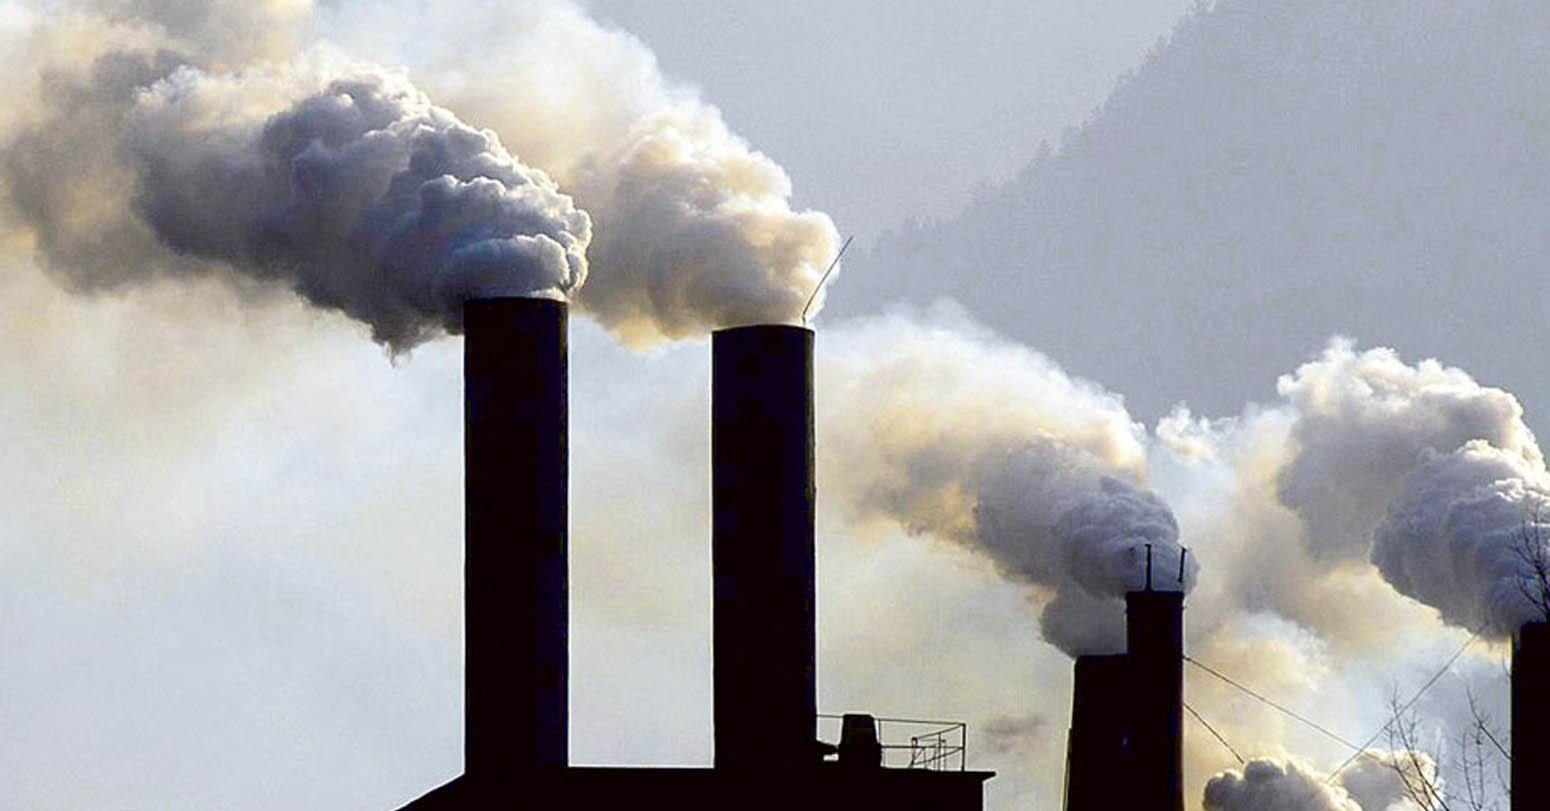 वायु प्रदूषणले विश्वमा ८१ लाख मानिसको मृत्यु